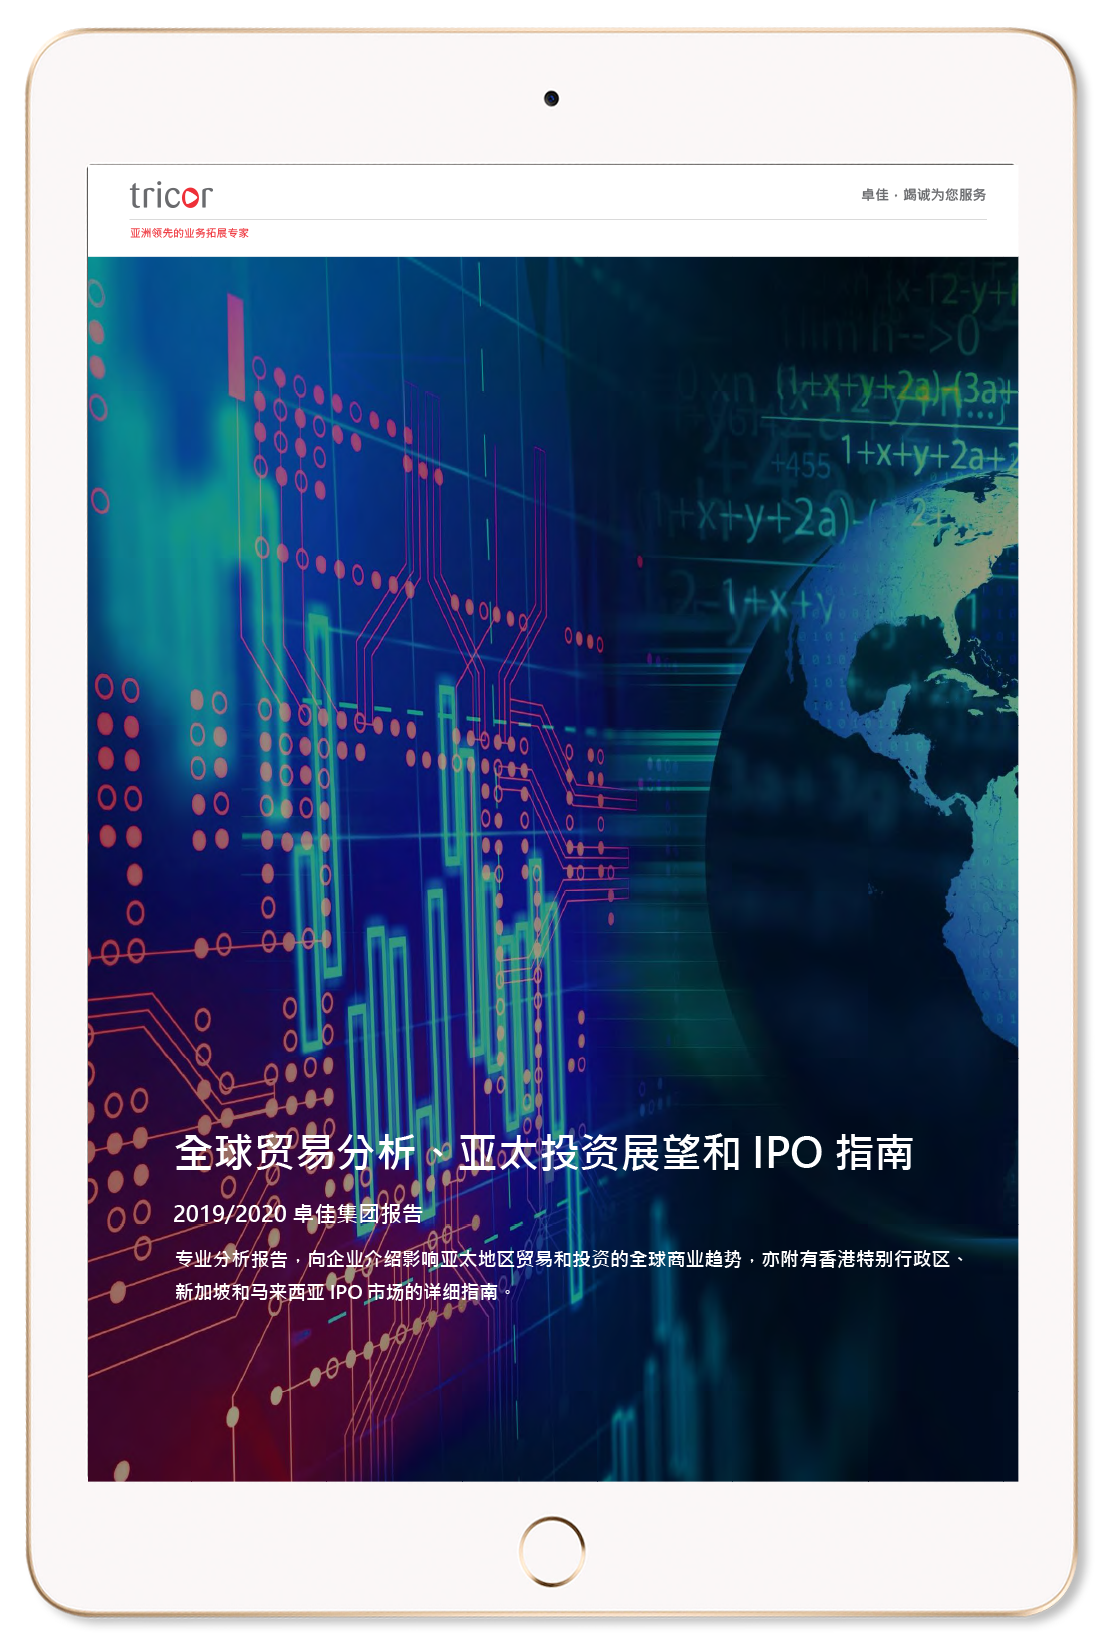 全球贸易分析、亚太投资展望和IPO指南